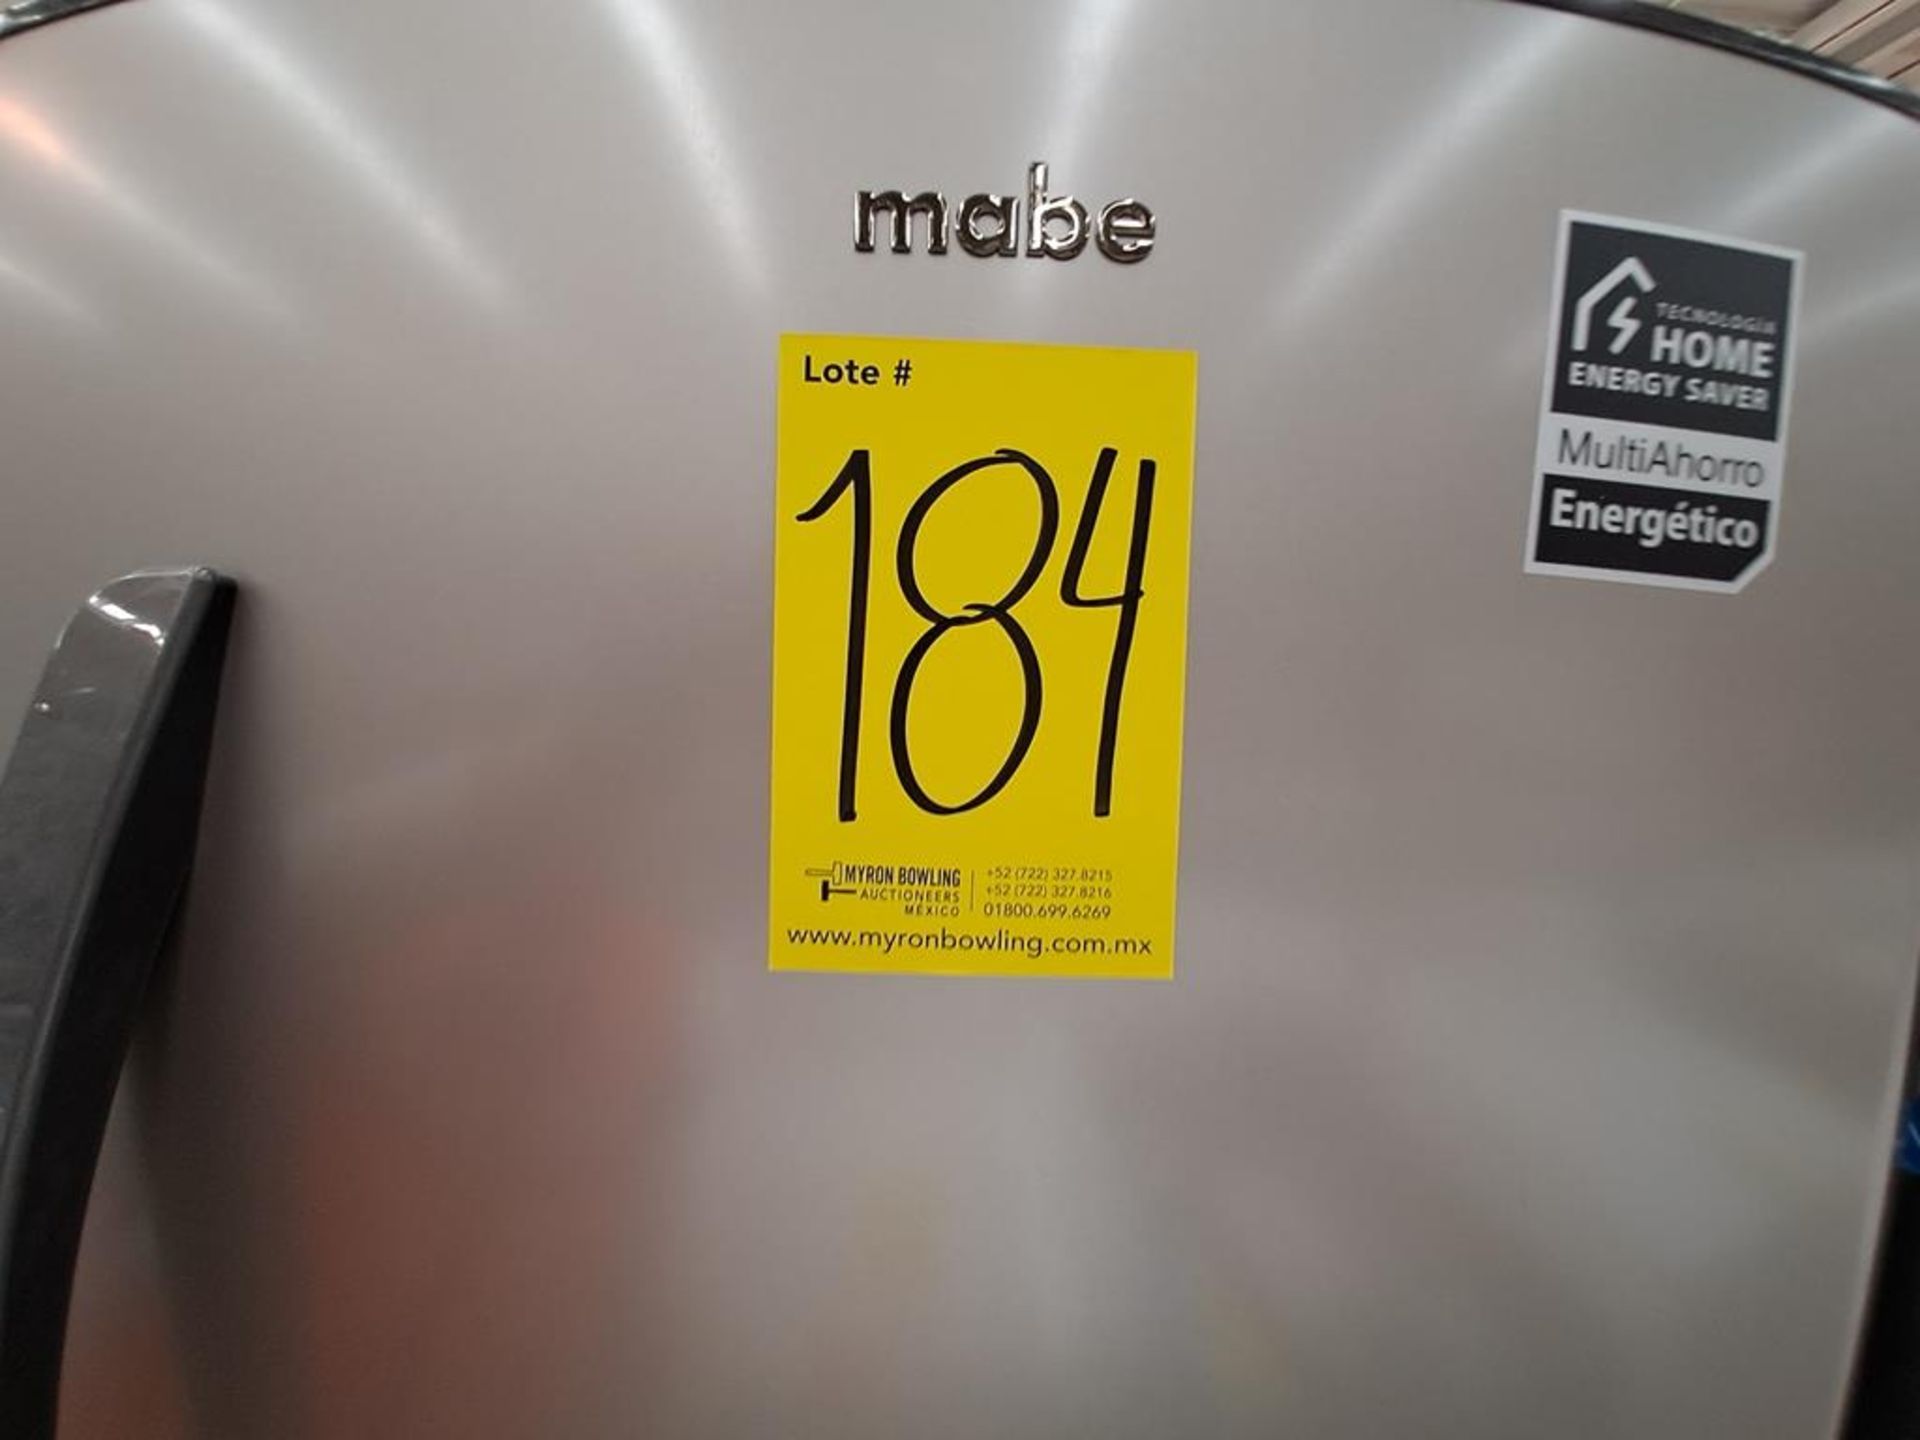 (Equipo nuevo) Lote de 2 refrigeradores contiene: 1 refrigerador con dispensador de agua Marca MABE - Image 10 of 10